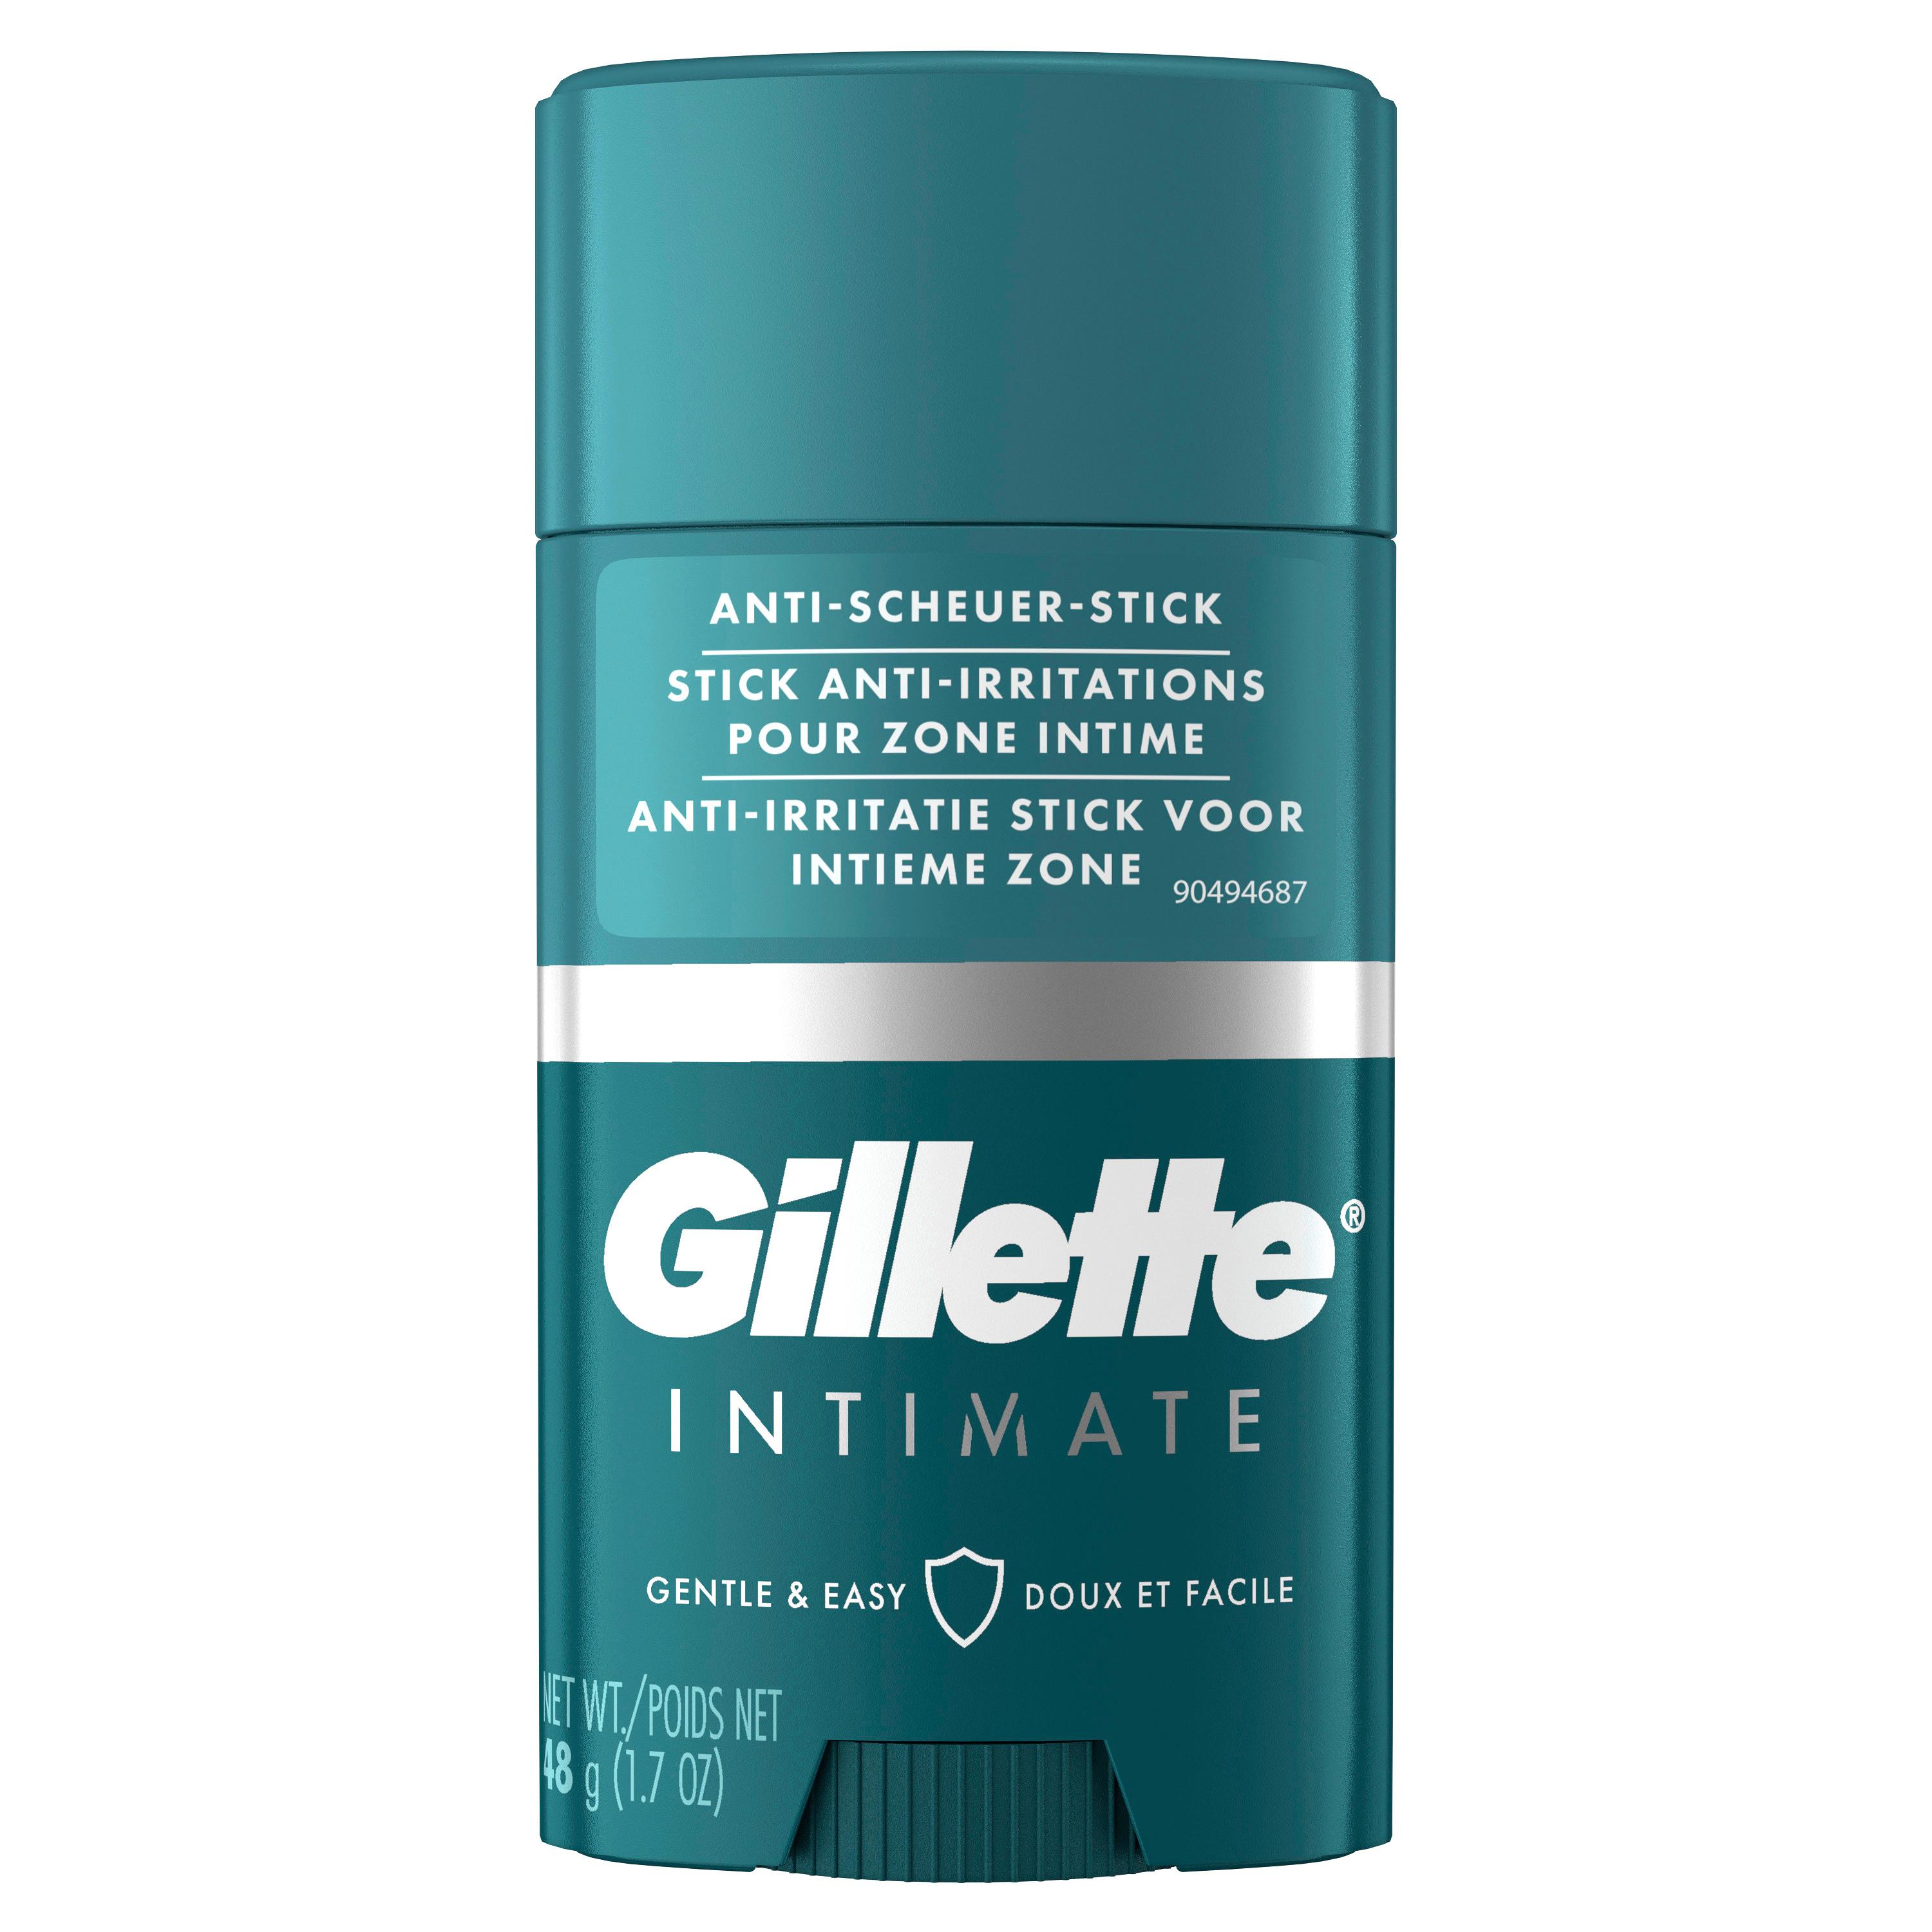 Gillette - Intimate Anti-Scheuer Stick für den Intimbereich